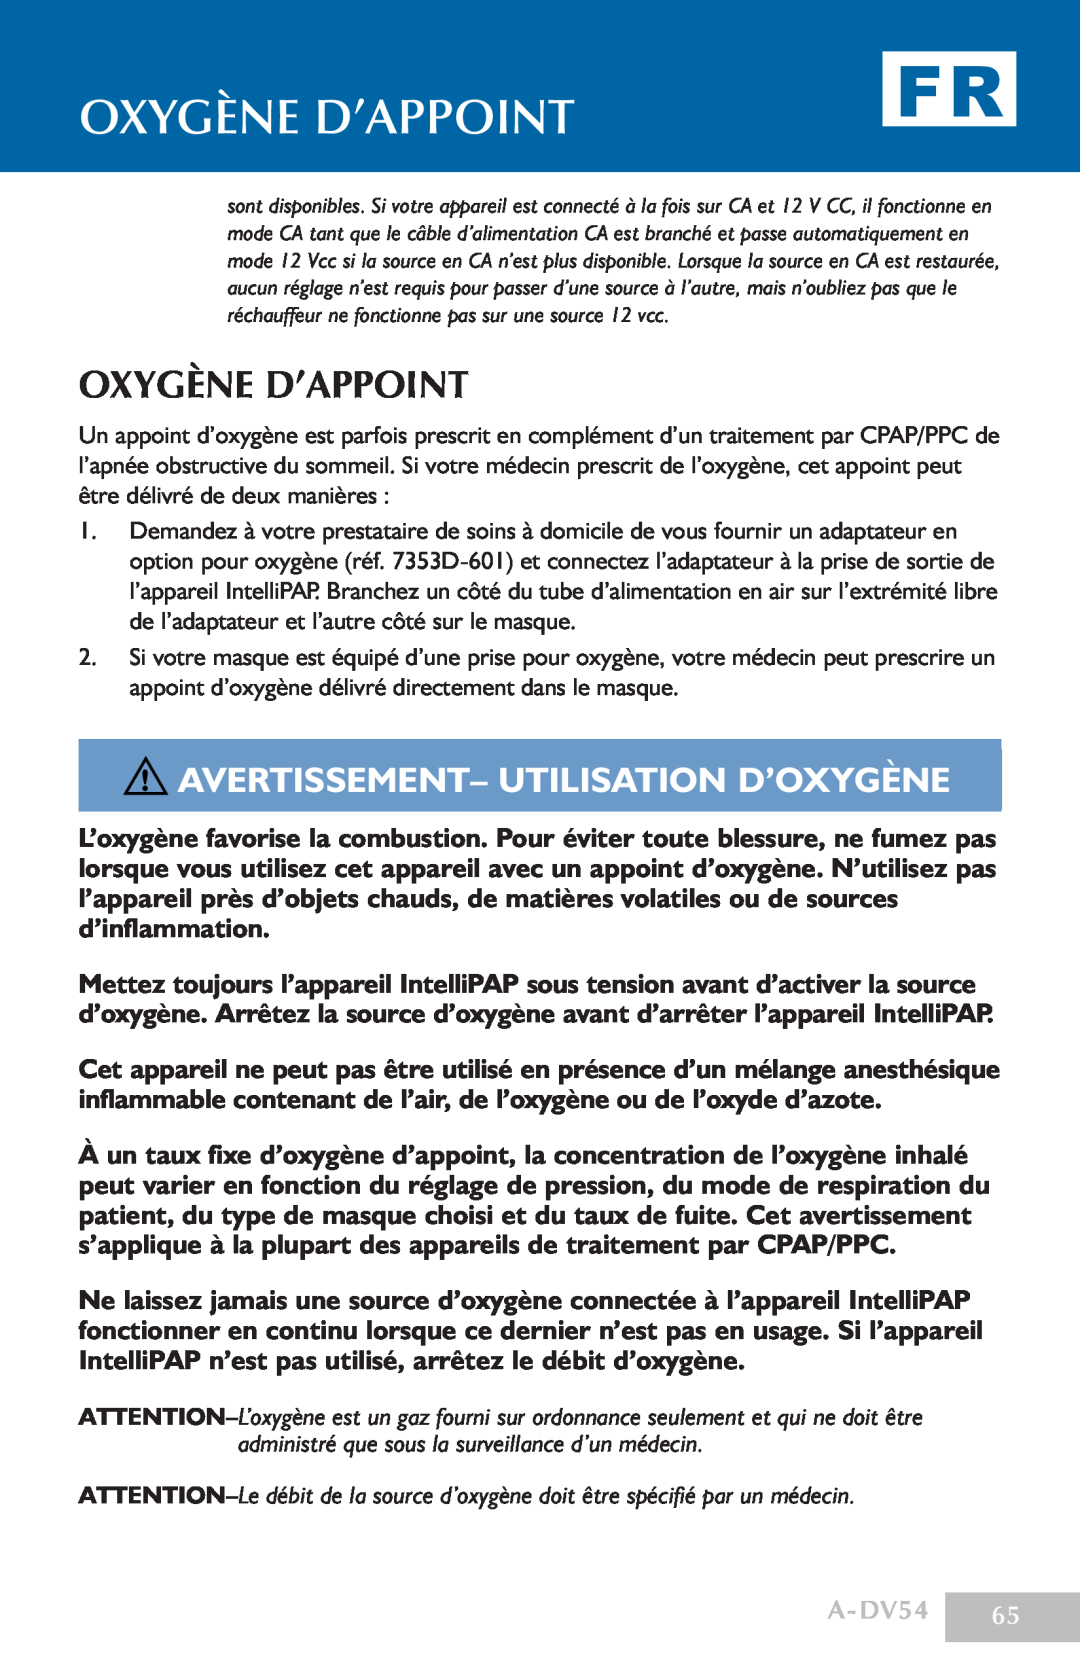 DeVillbiss Air Power Company manual Oxygène D’Appoint, avertissement- Utilisation d’oxygène, A-DV54 